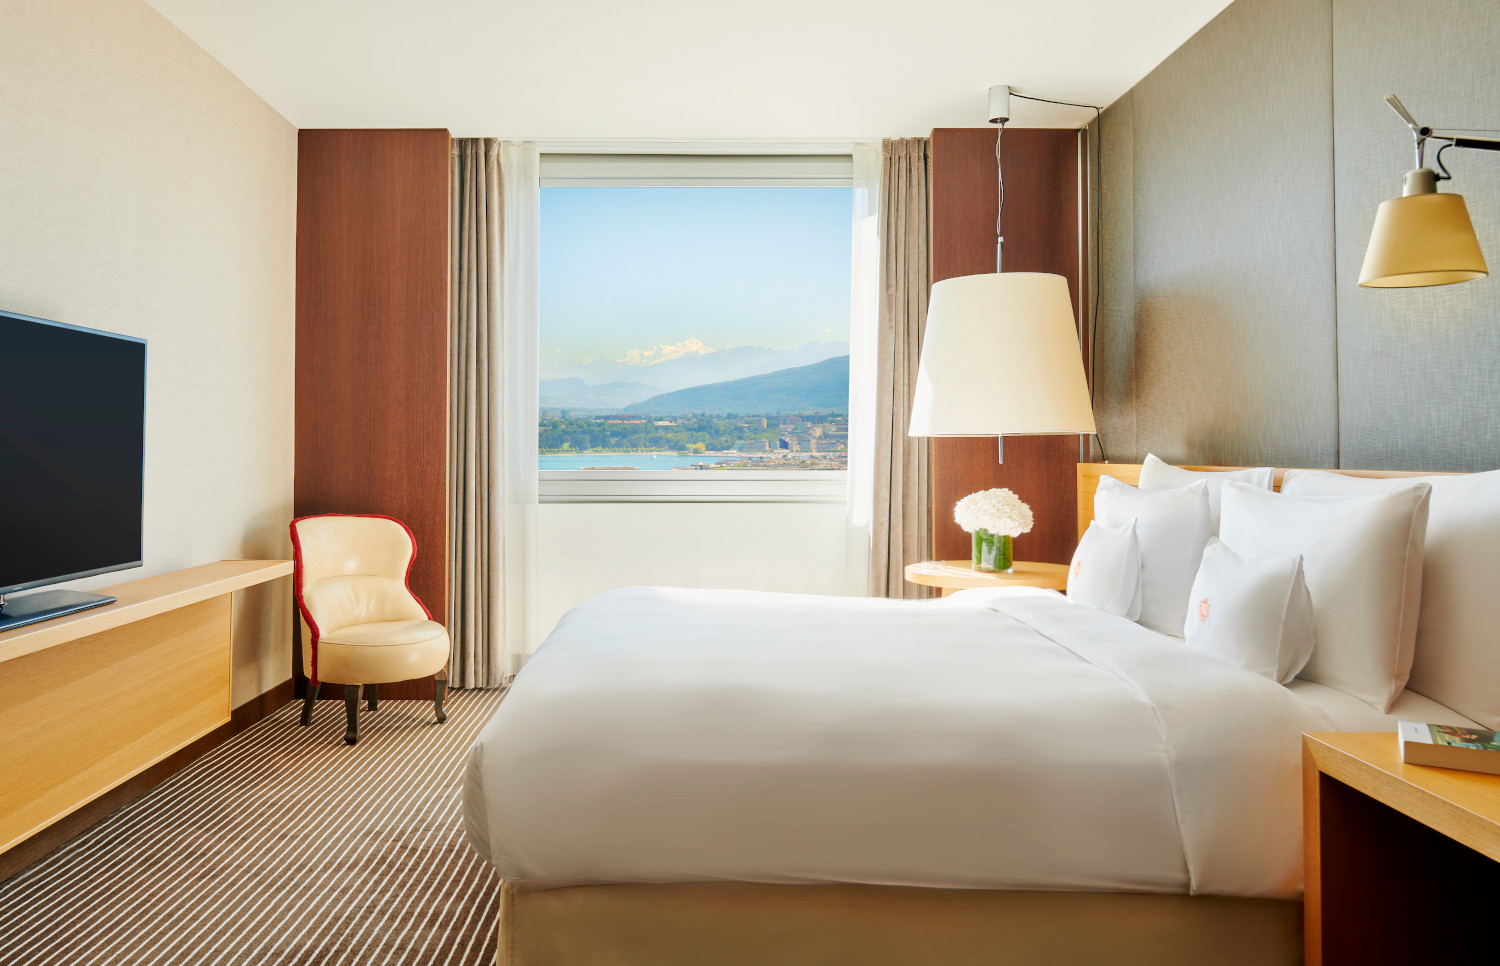 InterContinental-Geneve-Panoramic-Lake-View-Room